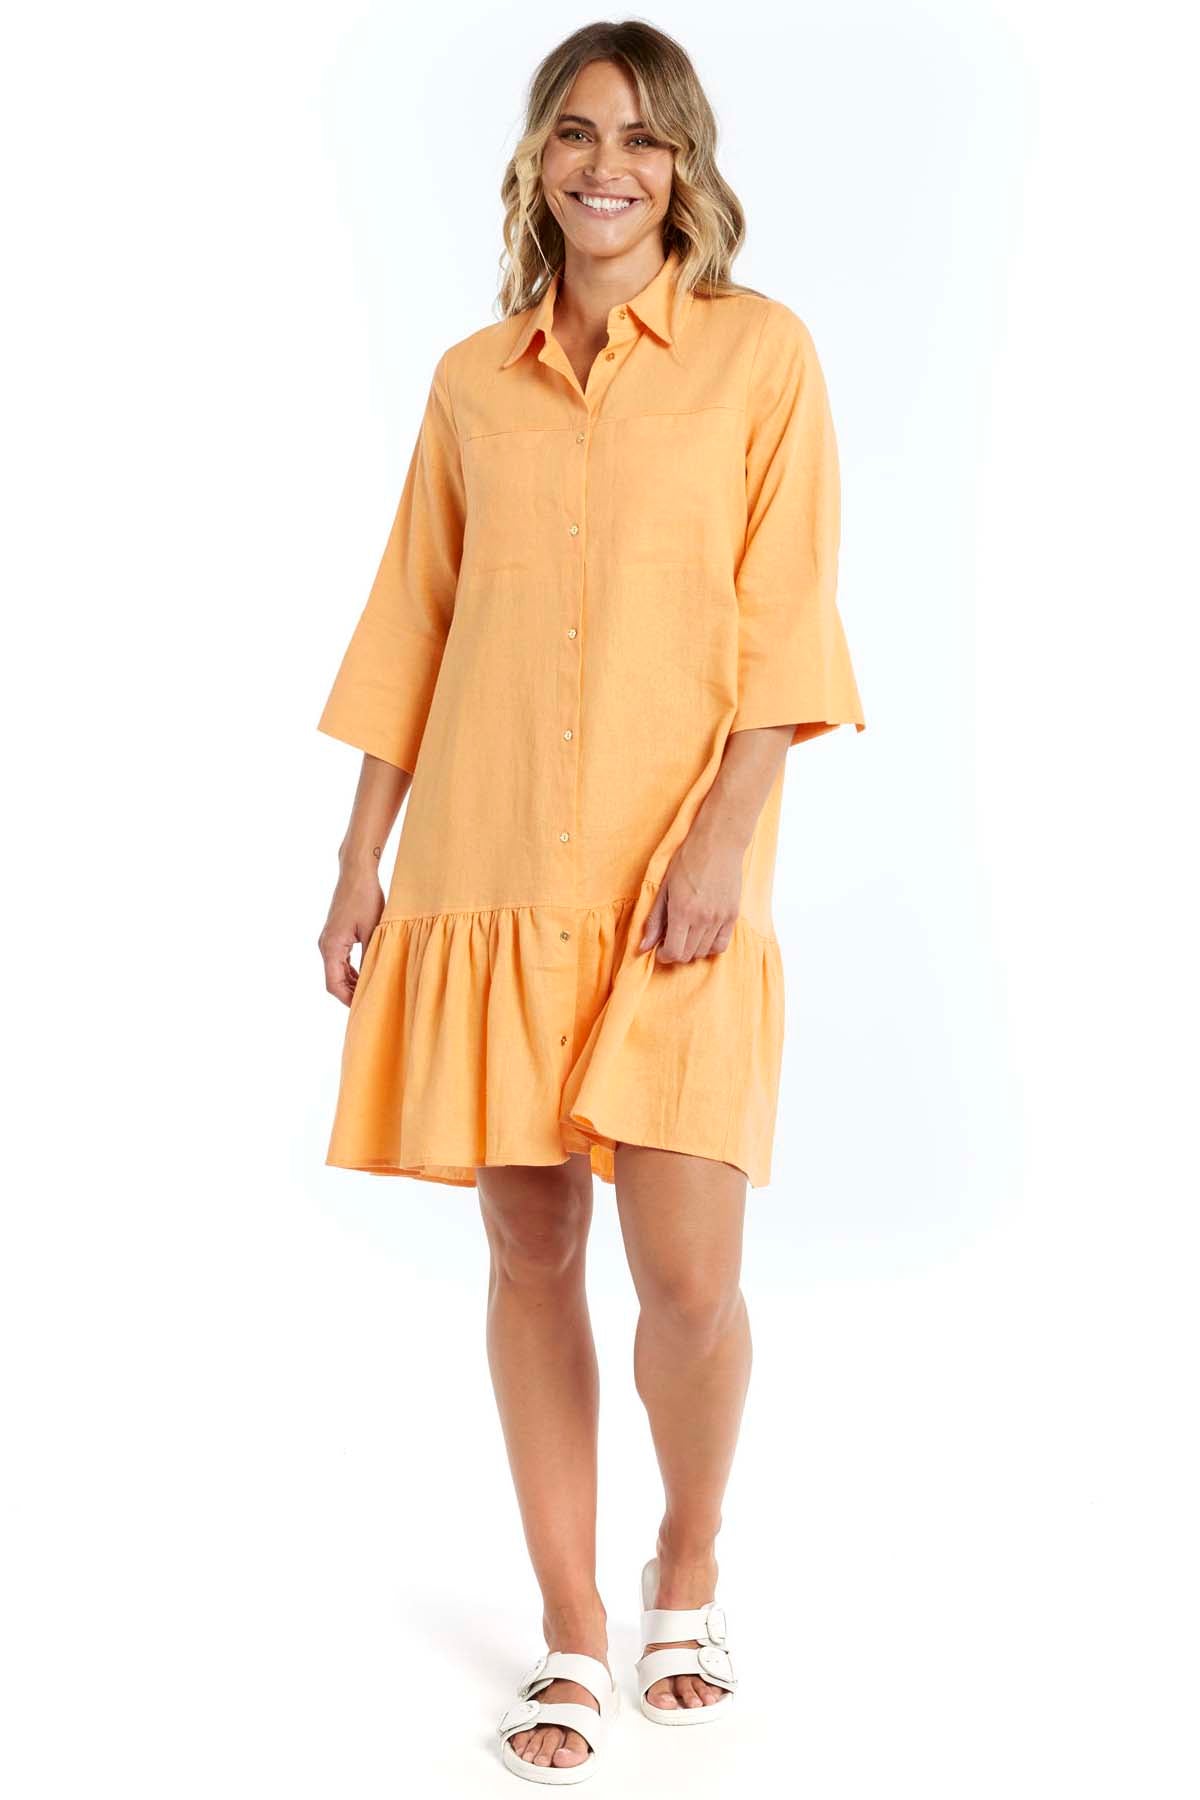 Betty Basics Adrienne Dress in Mango - Hey Sara